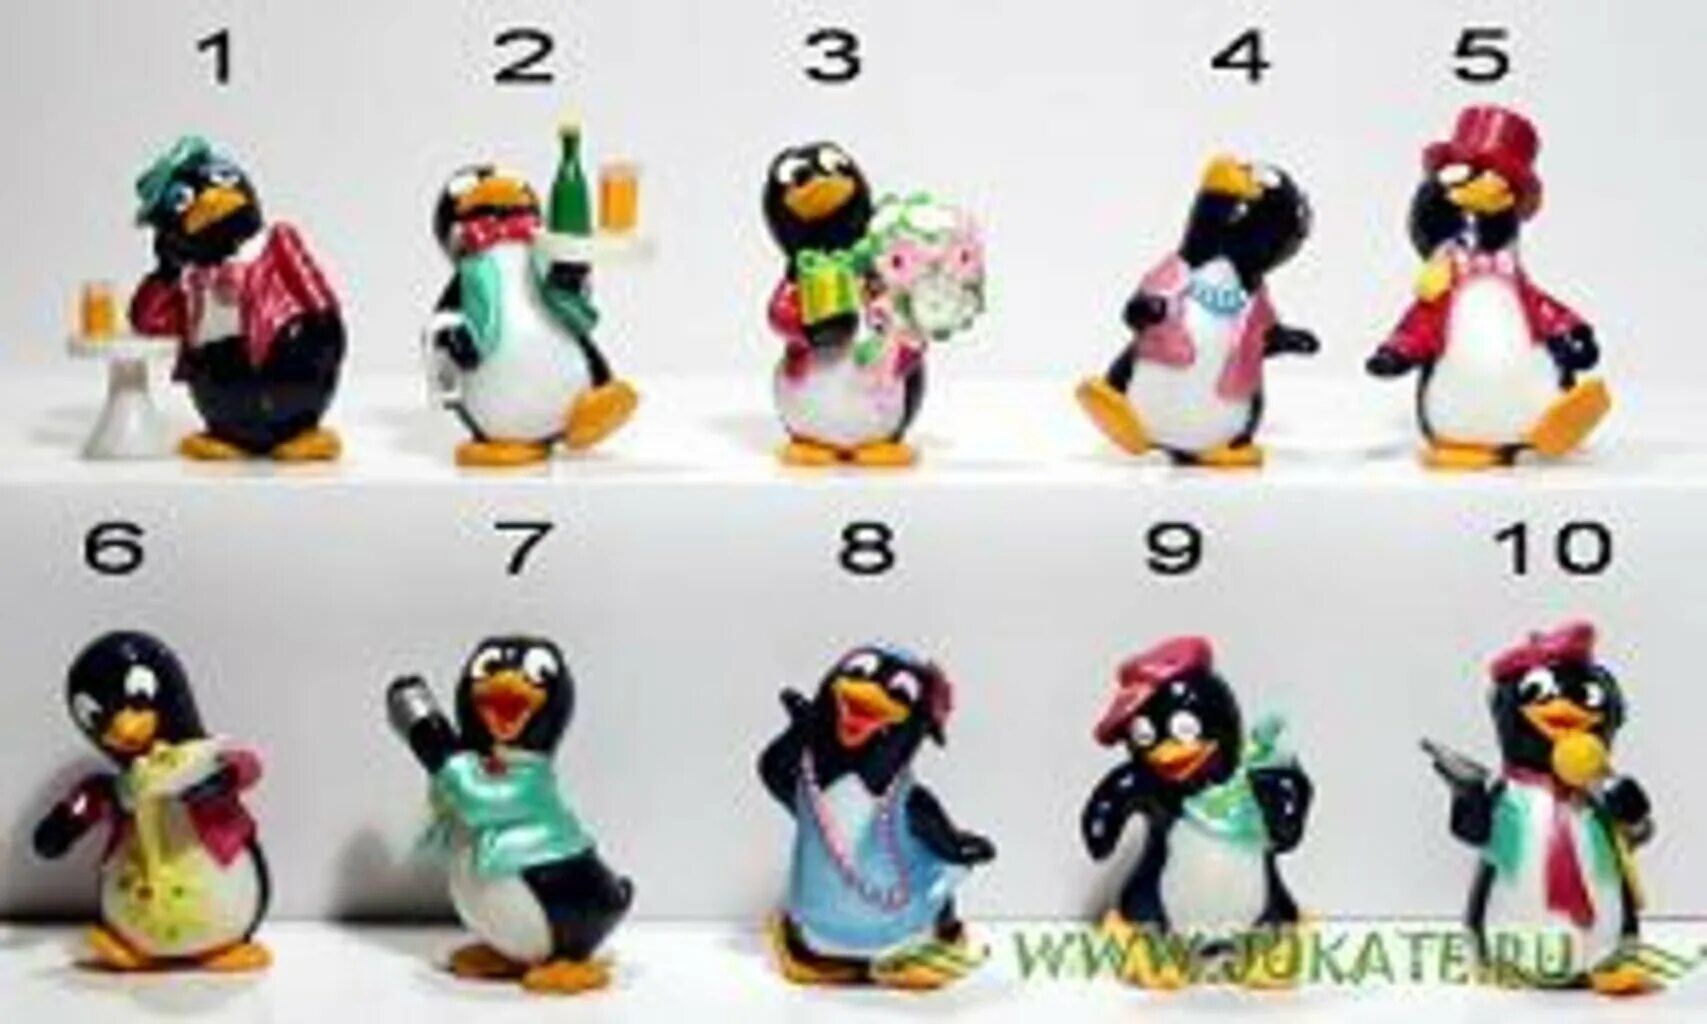 Коллекция пингвинов из Киндер сюрприза 1992. Киндер сюрприз пингвины 1992. Киндер сюрприз коллекция пингвинов. Коллекция Киндер пингвинов 1992. Киндер игрушки пингвины